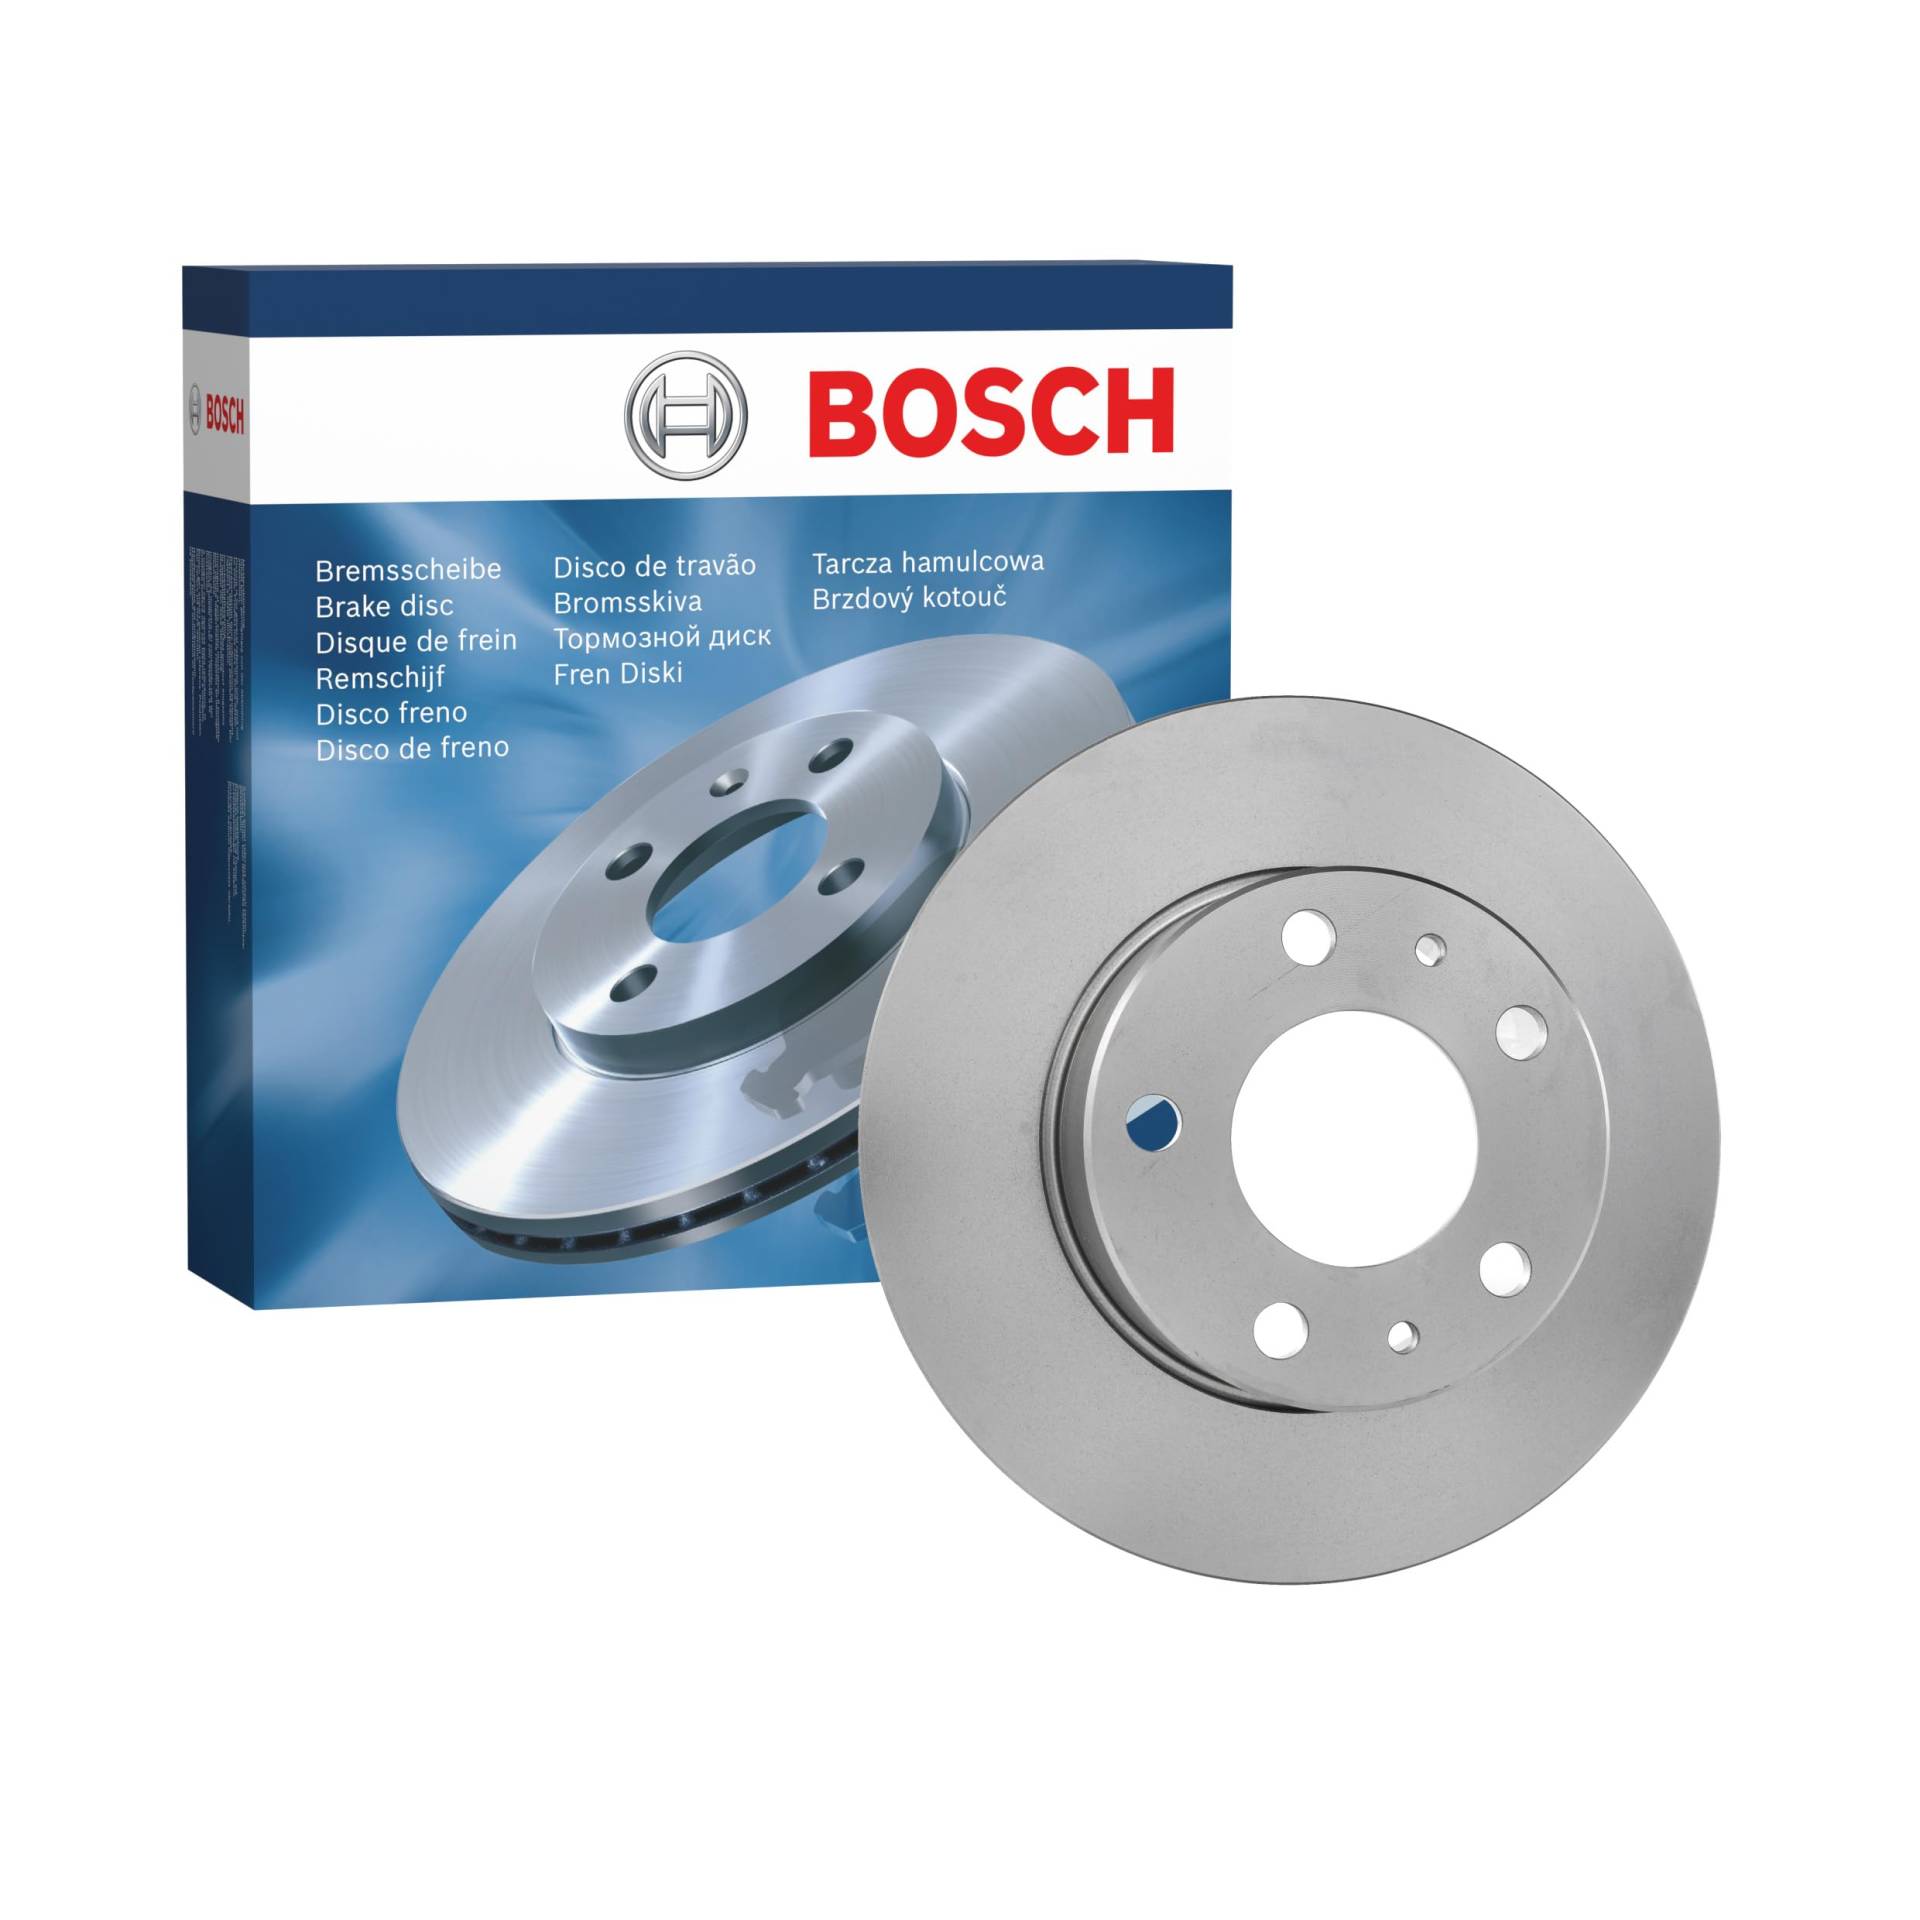 Bosch BD989 Bremsscheiben - Hinterachse - ECE-R90 Zertifizierung - eine Bremsscheibe von Bosch Automotive